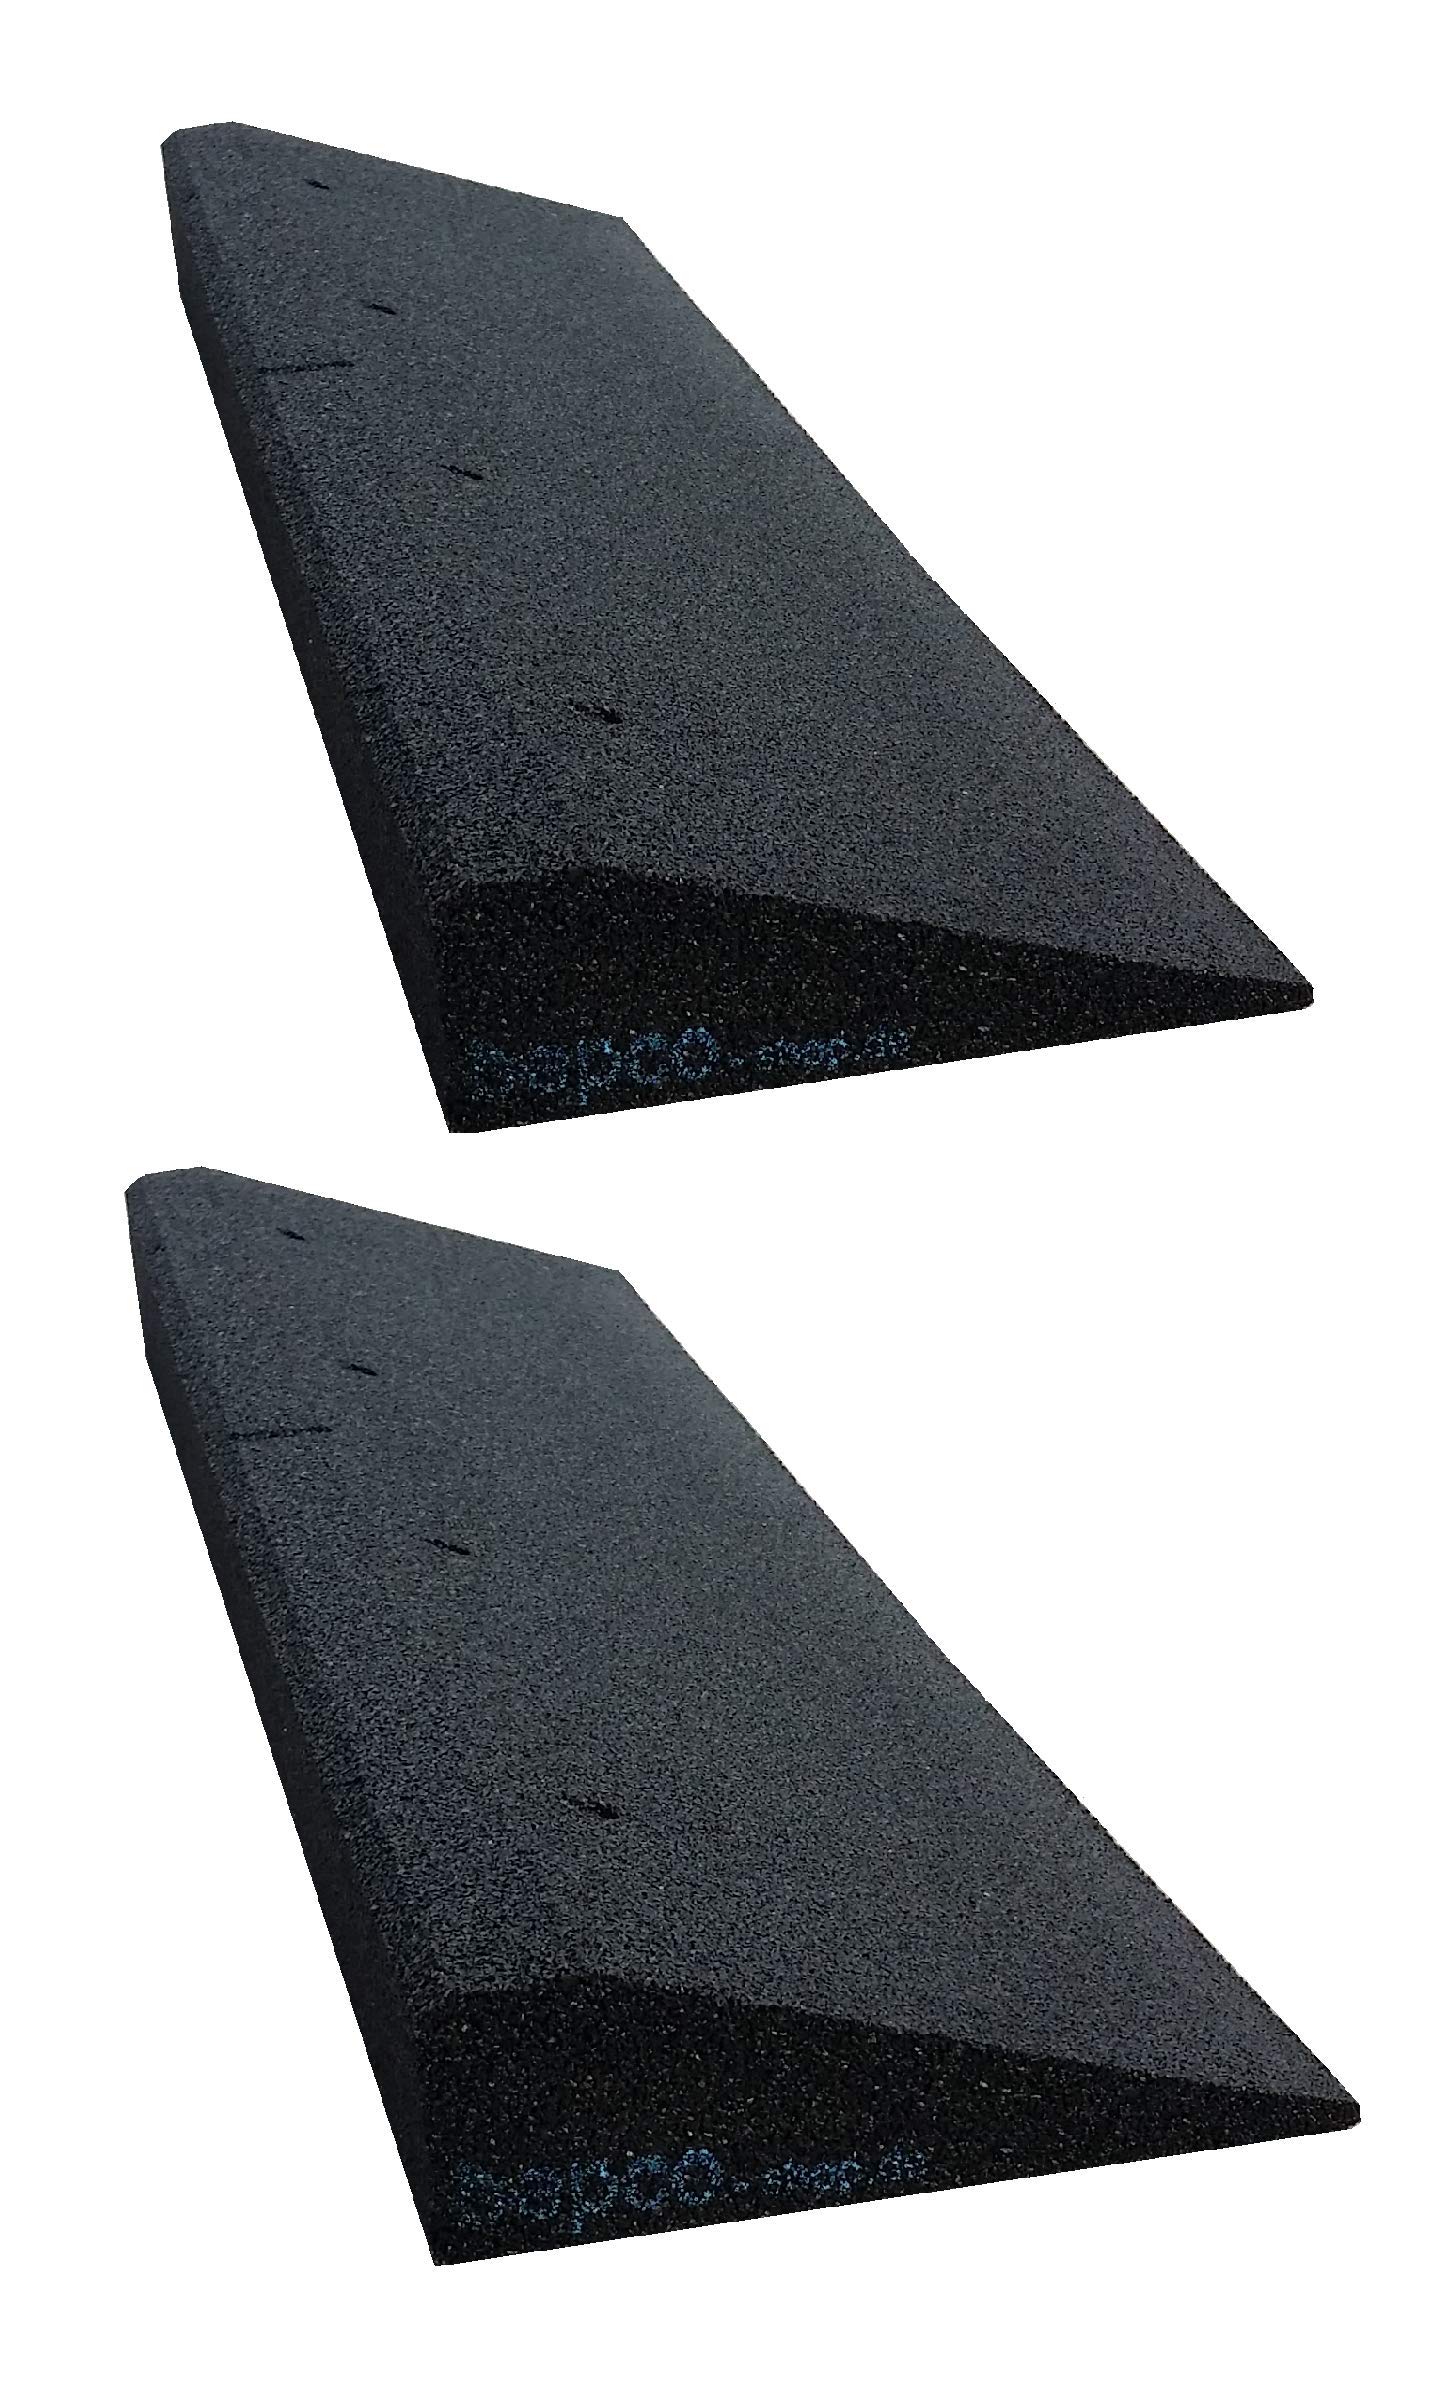 bepco Bordsteinkanten-Rampe 2er Set (2 Stück) LxBxH: 100 x 25 x 5 cm aus Gummi (schwarz) Auffahrrampe,Türschwellenrampe, mit eingelagerten Unterlegscheiben zur Befestigung